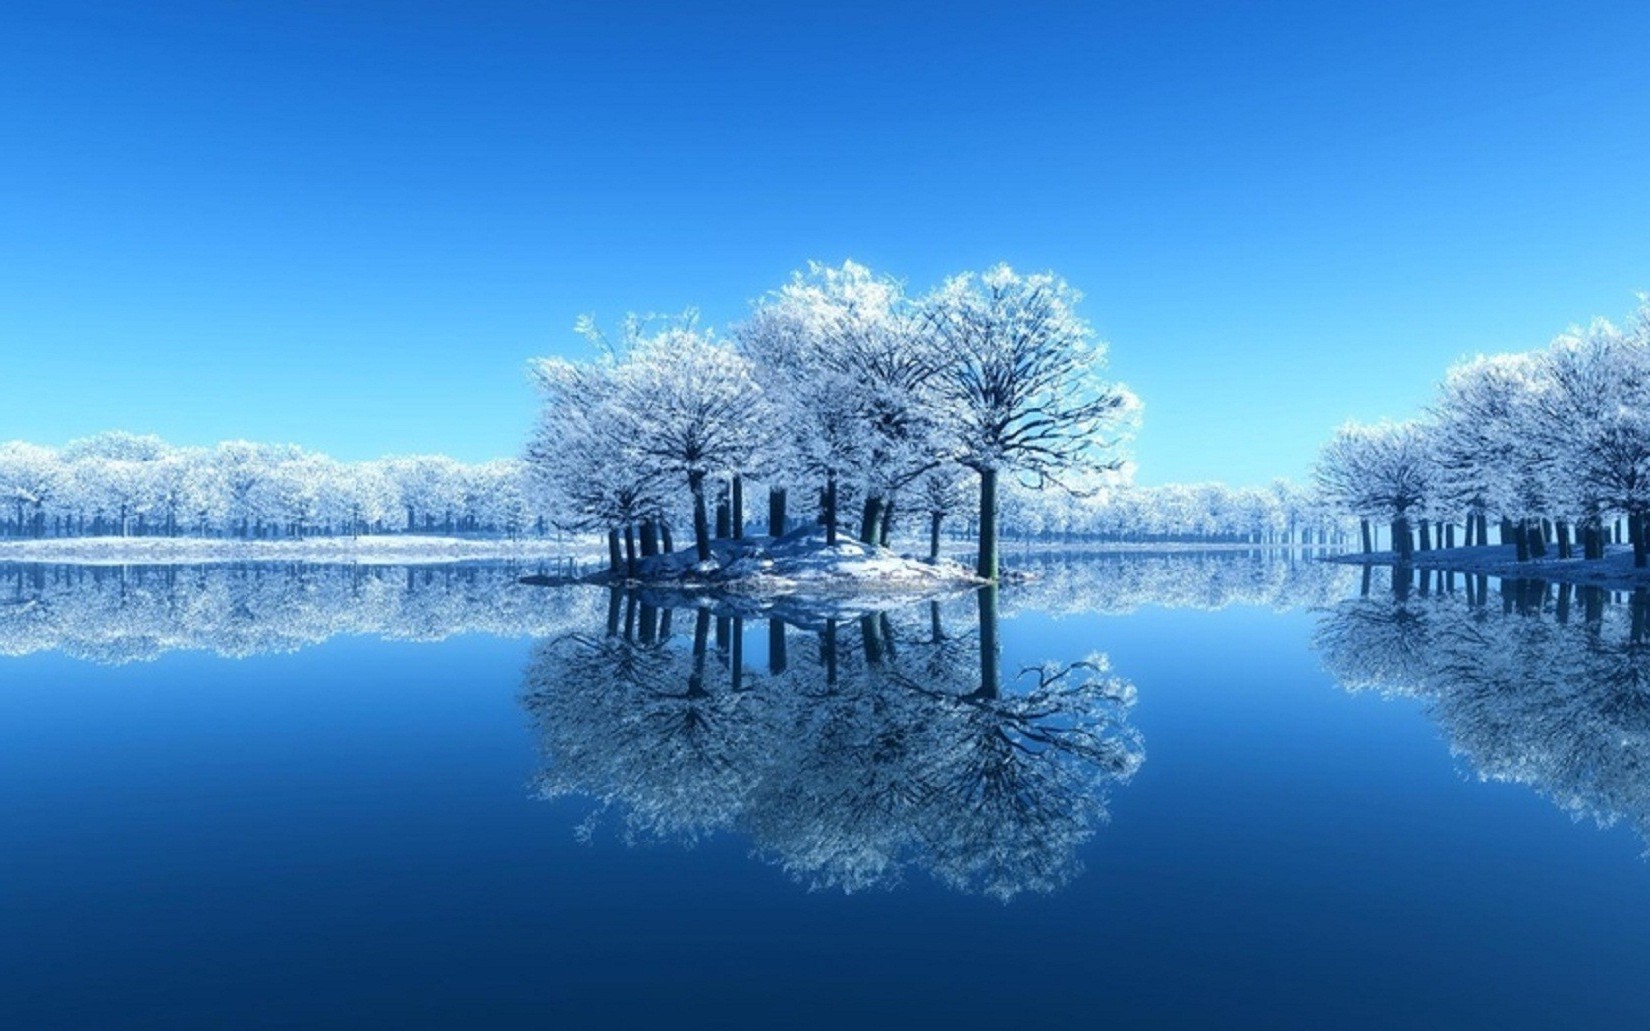 зима снег холодная мороз природа лед замороженные древесины воды отражение пейзаж небо рассвет дерево озеро сезон хладнокровие на открытом воздухе хорошую погоду